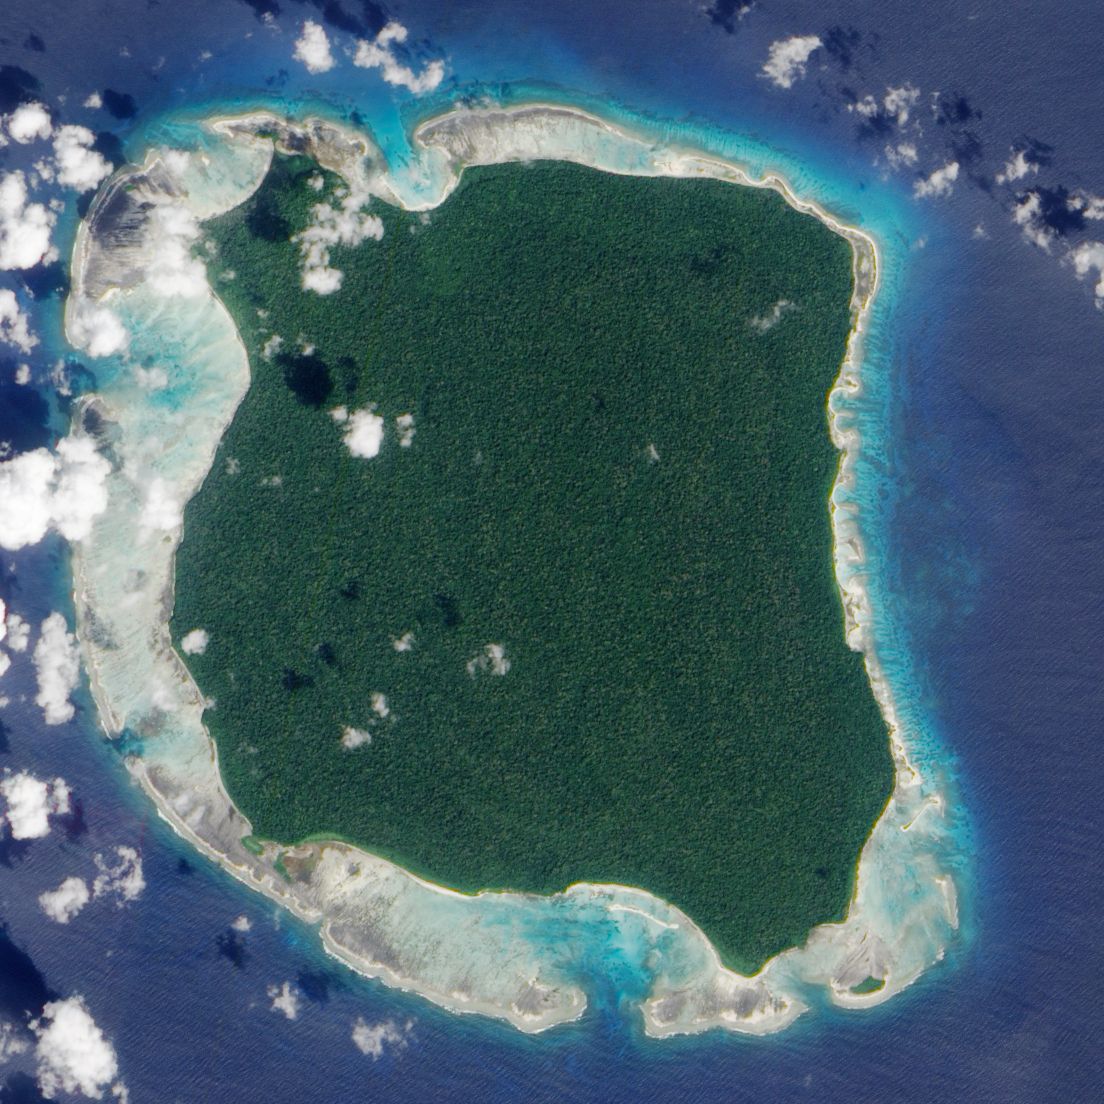 Sentinel island Andaman / NASA